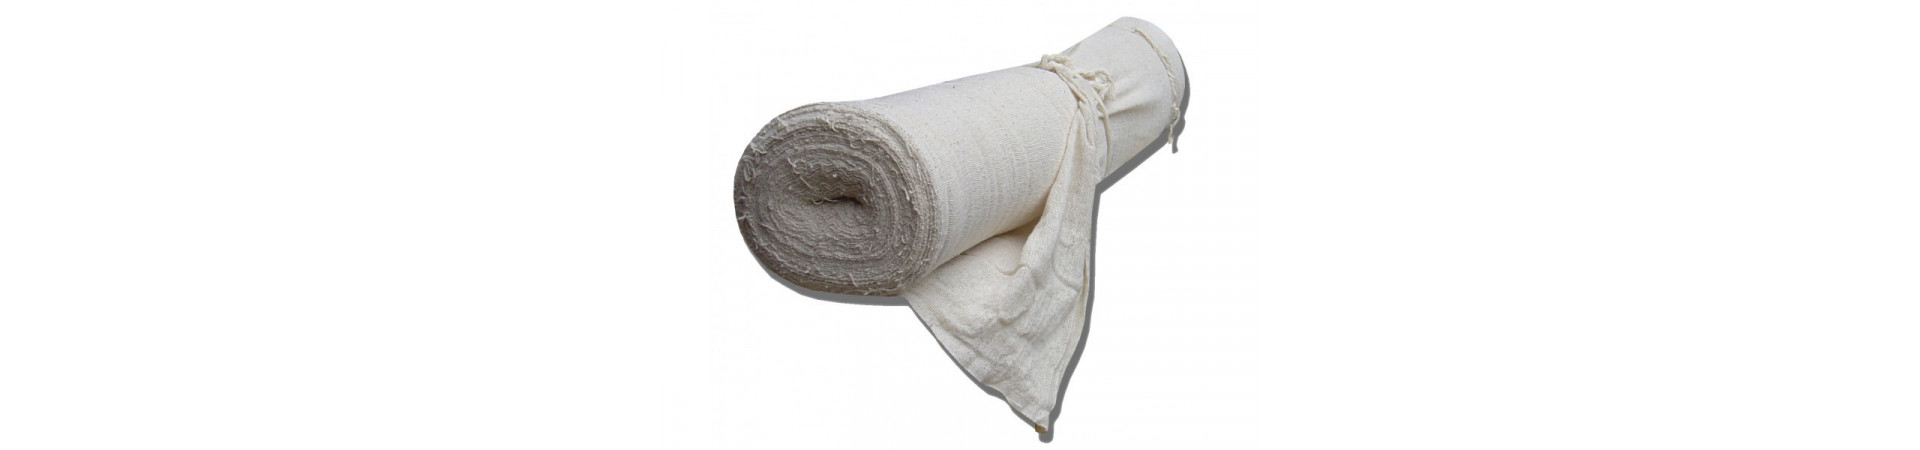 Технические ткани и полотенца